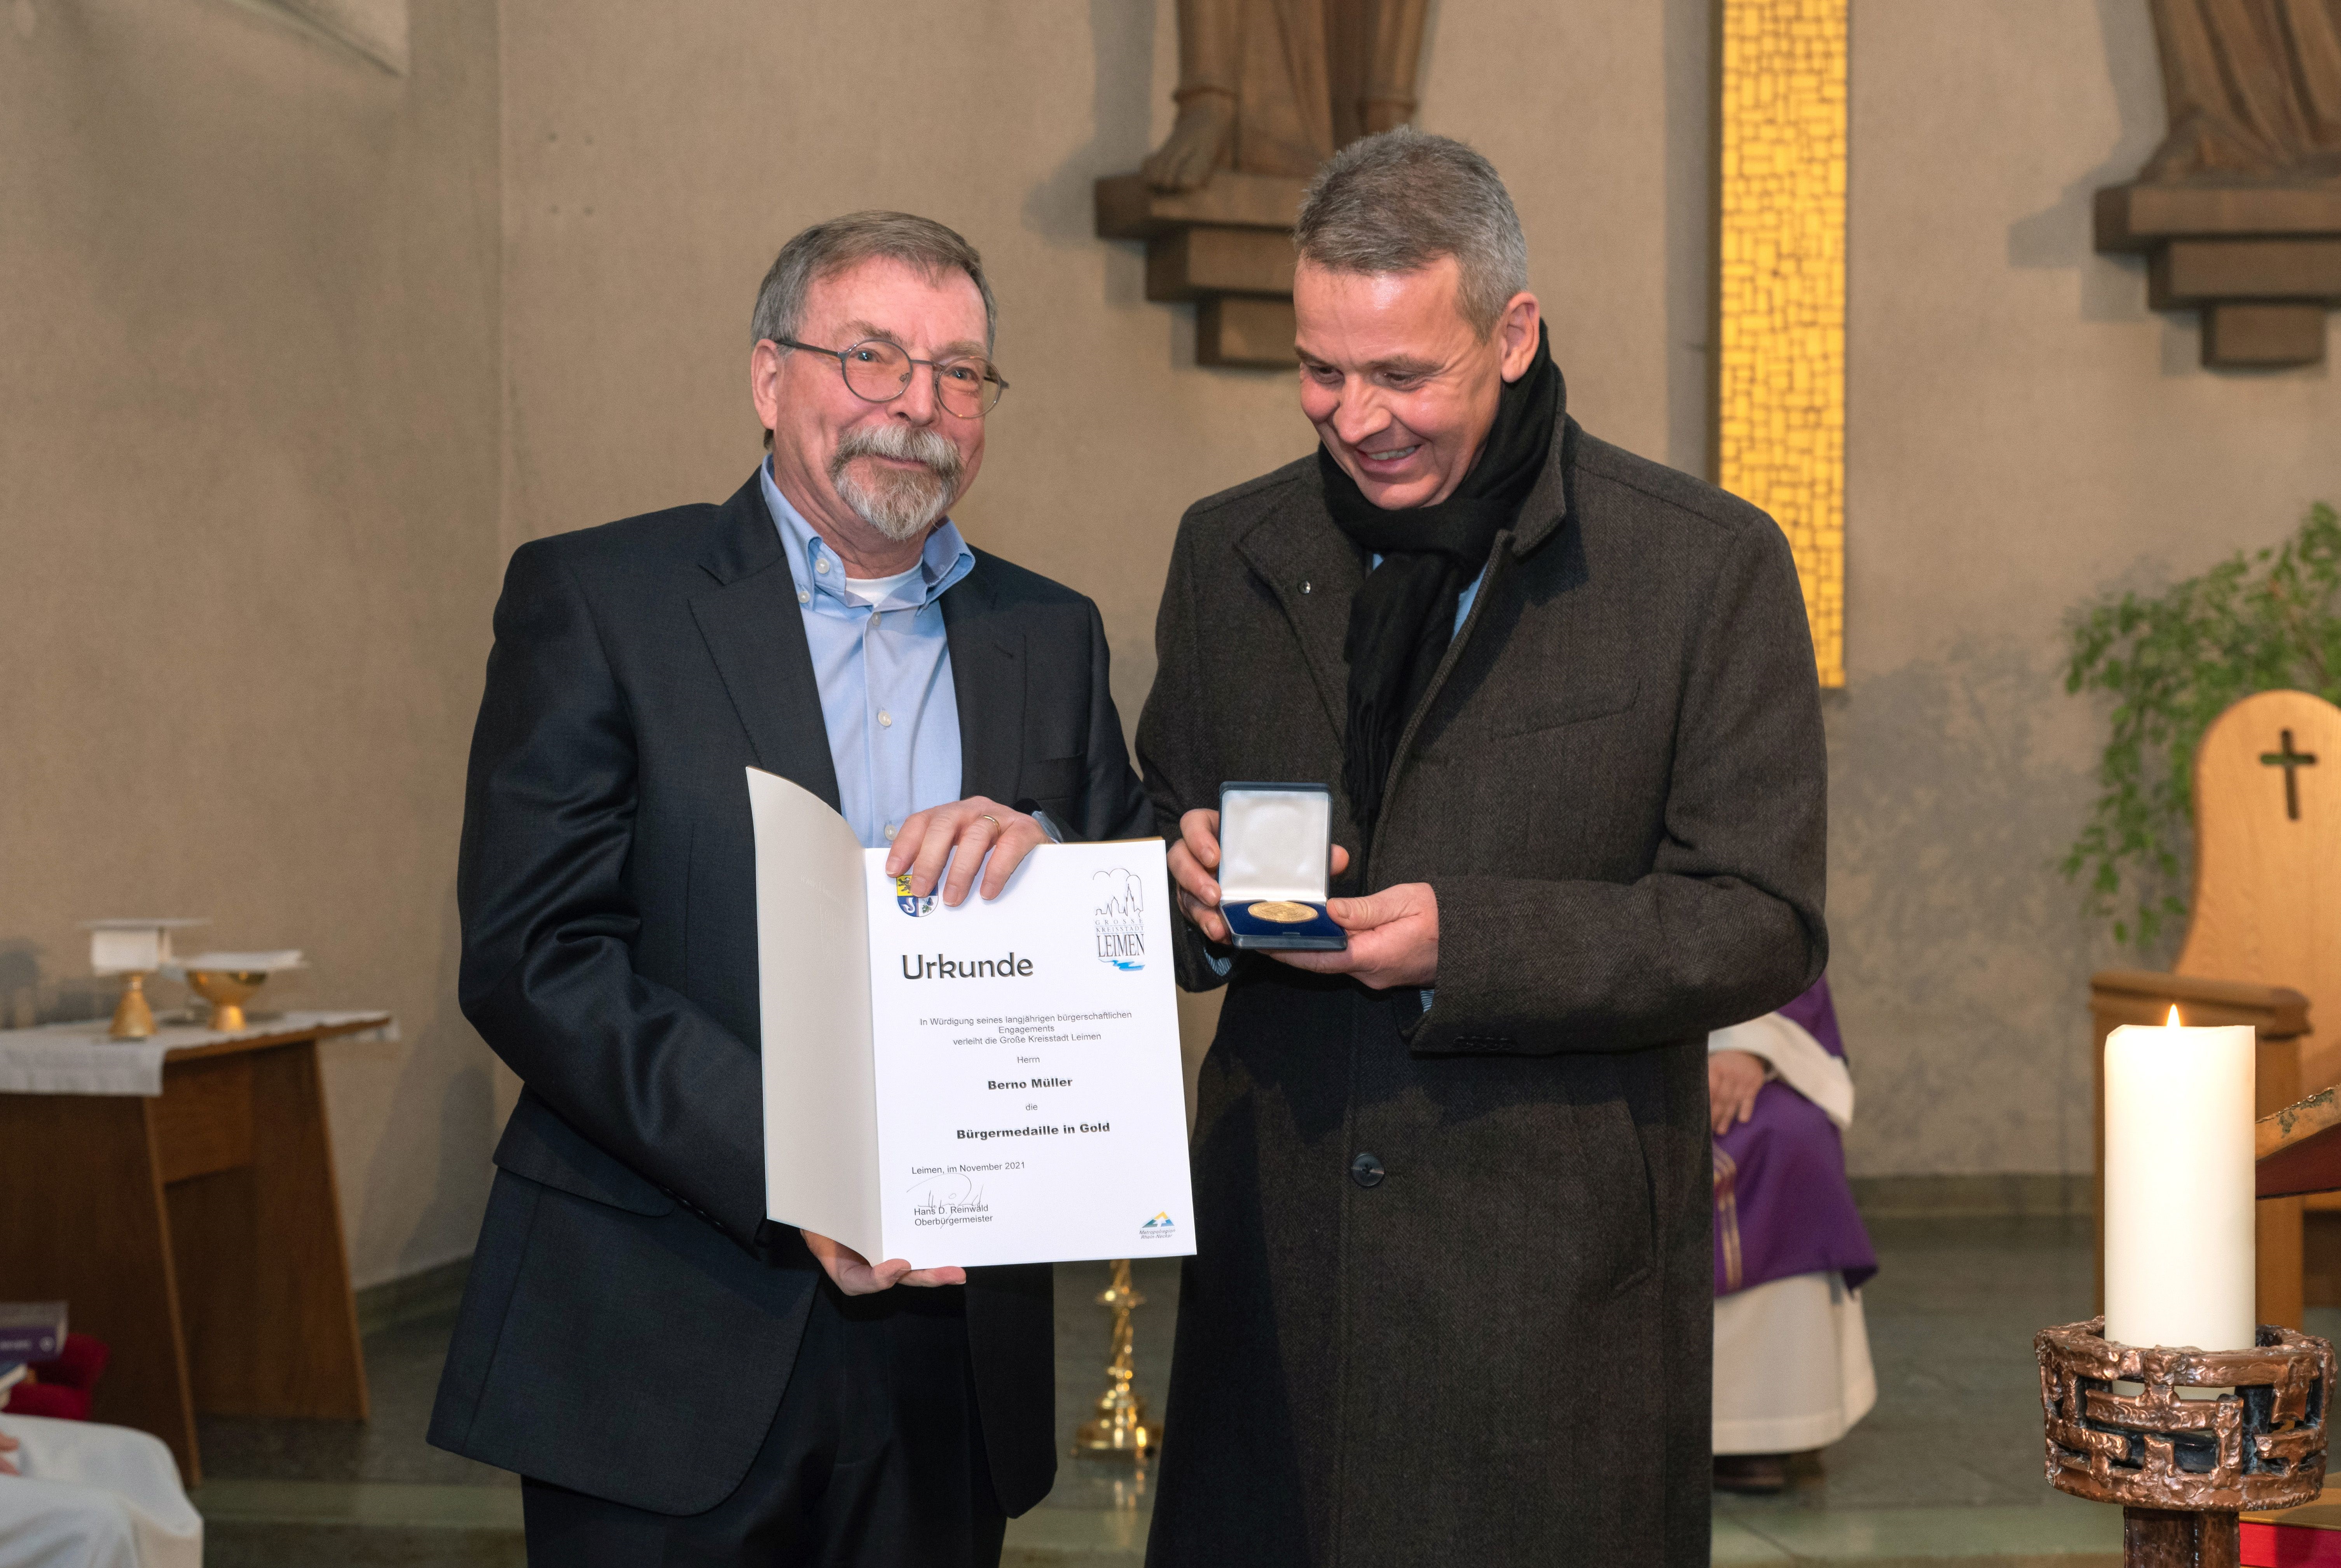  v.l.n.r.: Berno Müller und Oberbürgermeister Hans D. Reinwald bei der Verleihung der Stadtmedaille 